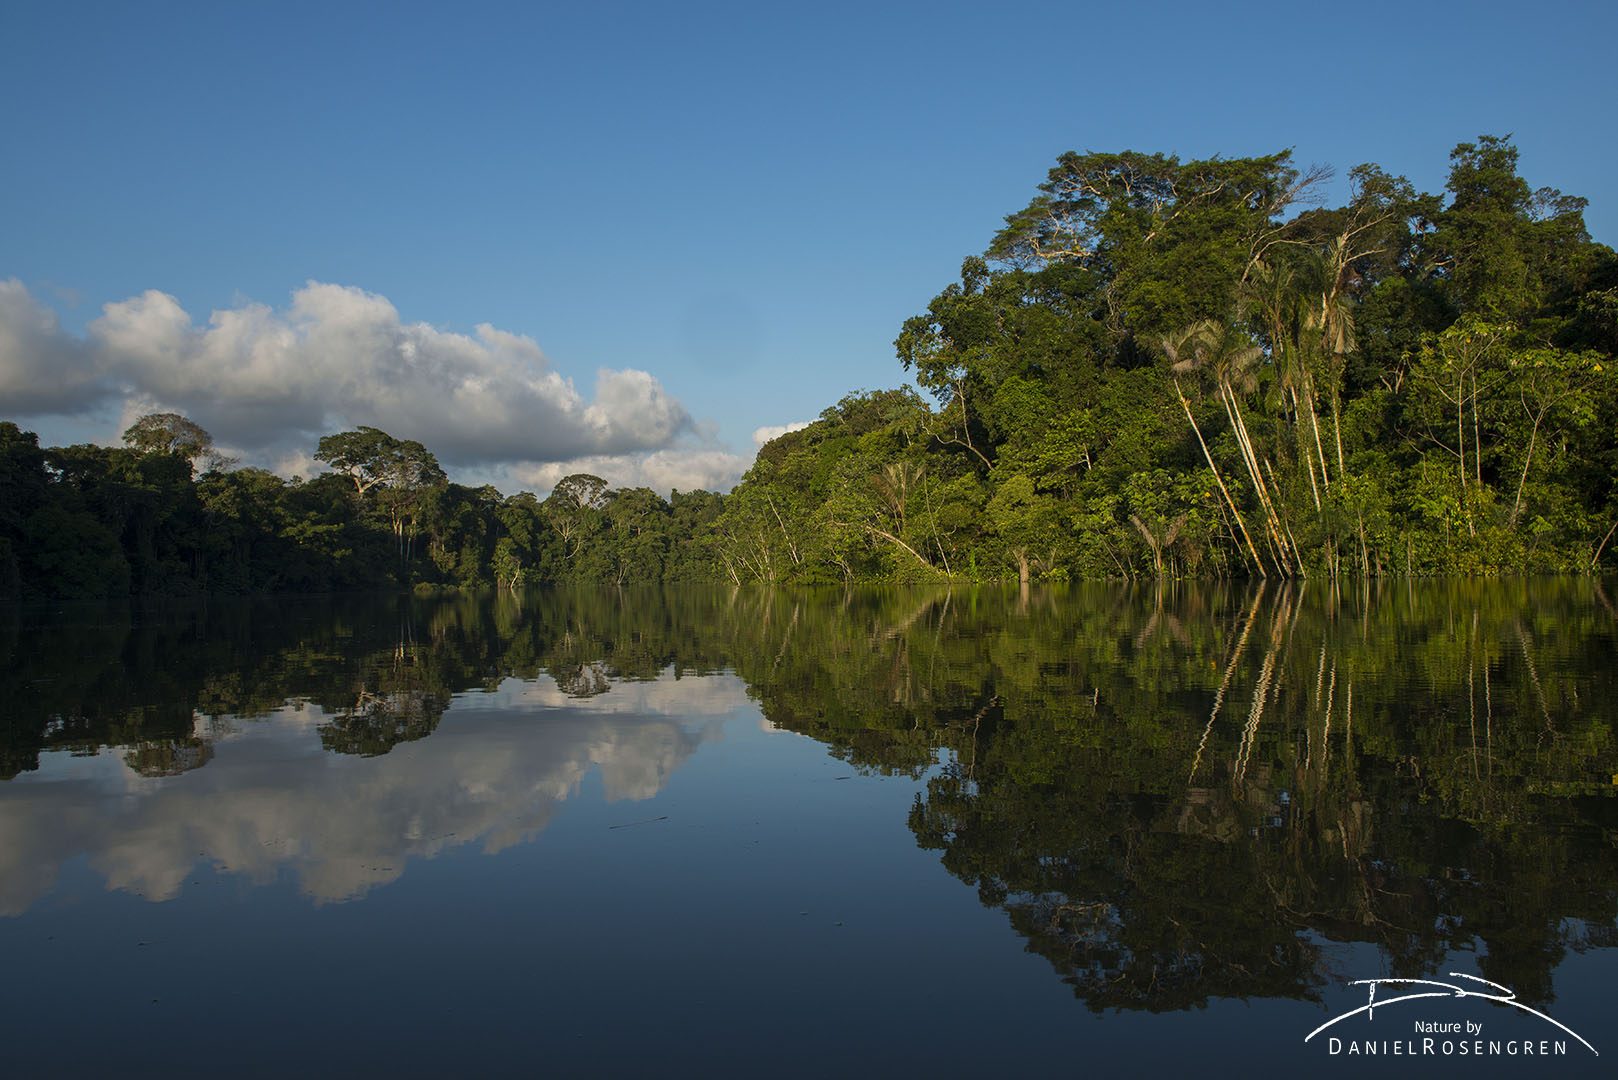 The rainforest along the River Yaguas. © Daniel Rosengren